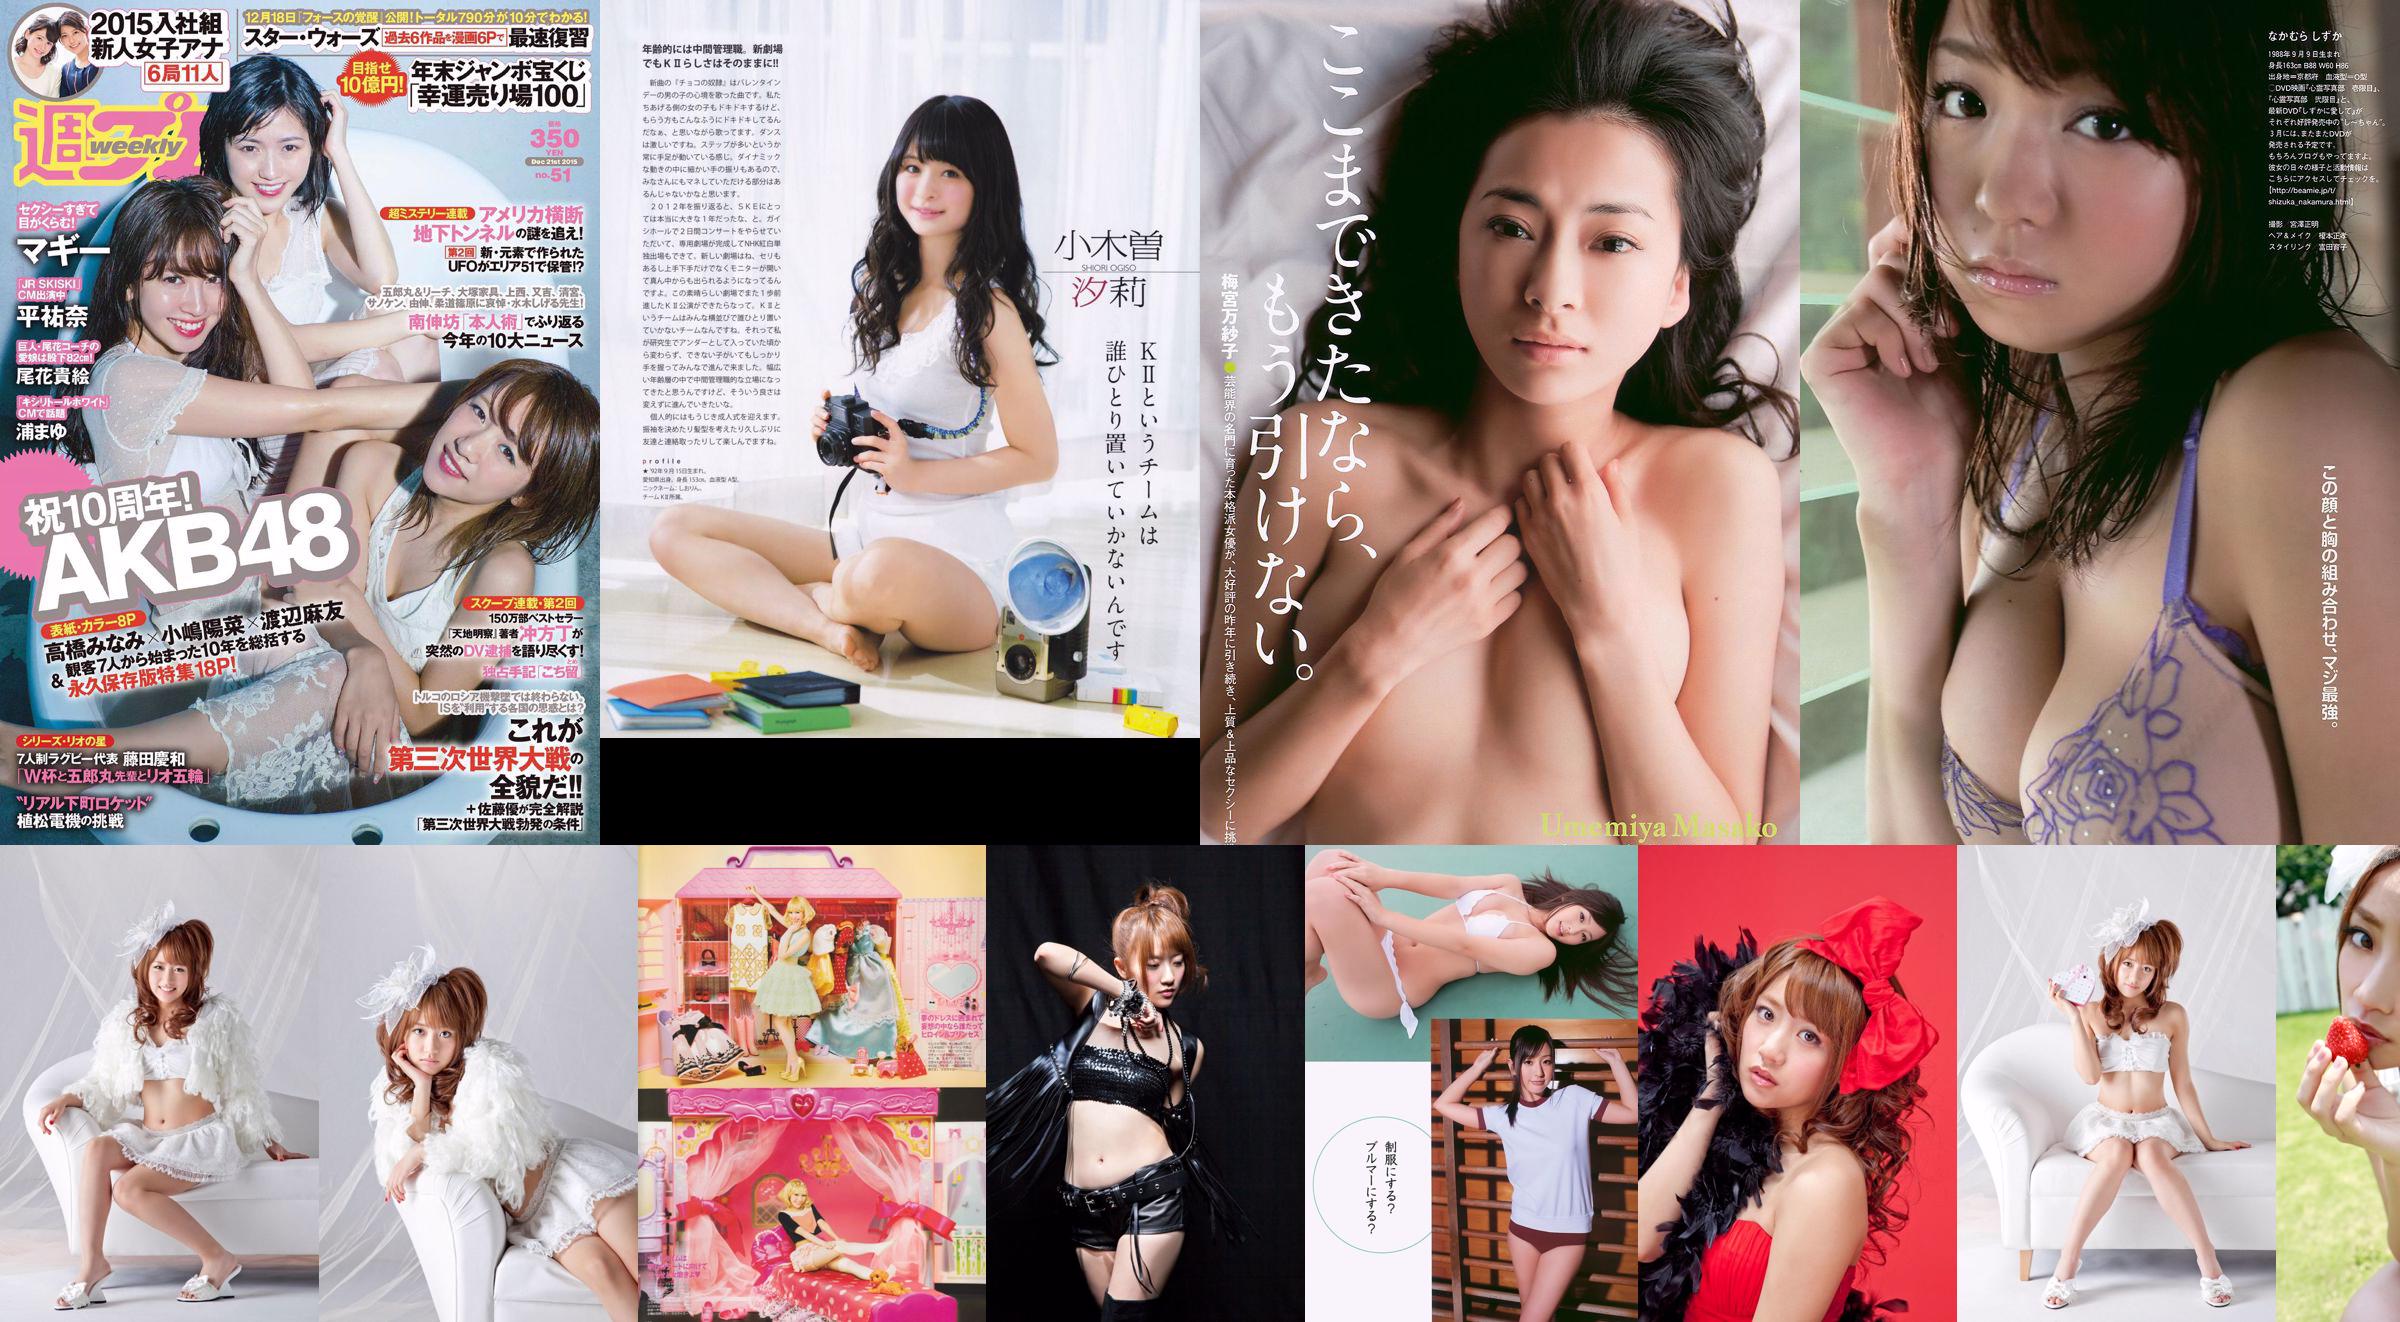 [Bomb Magazine] 2013 No.02 Takahashi Minami Matsui Jurina Kasai Tomomi Kitahara Riehi Photo magazine No.12bf38 Pagina 2